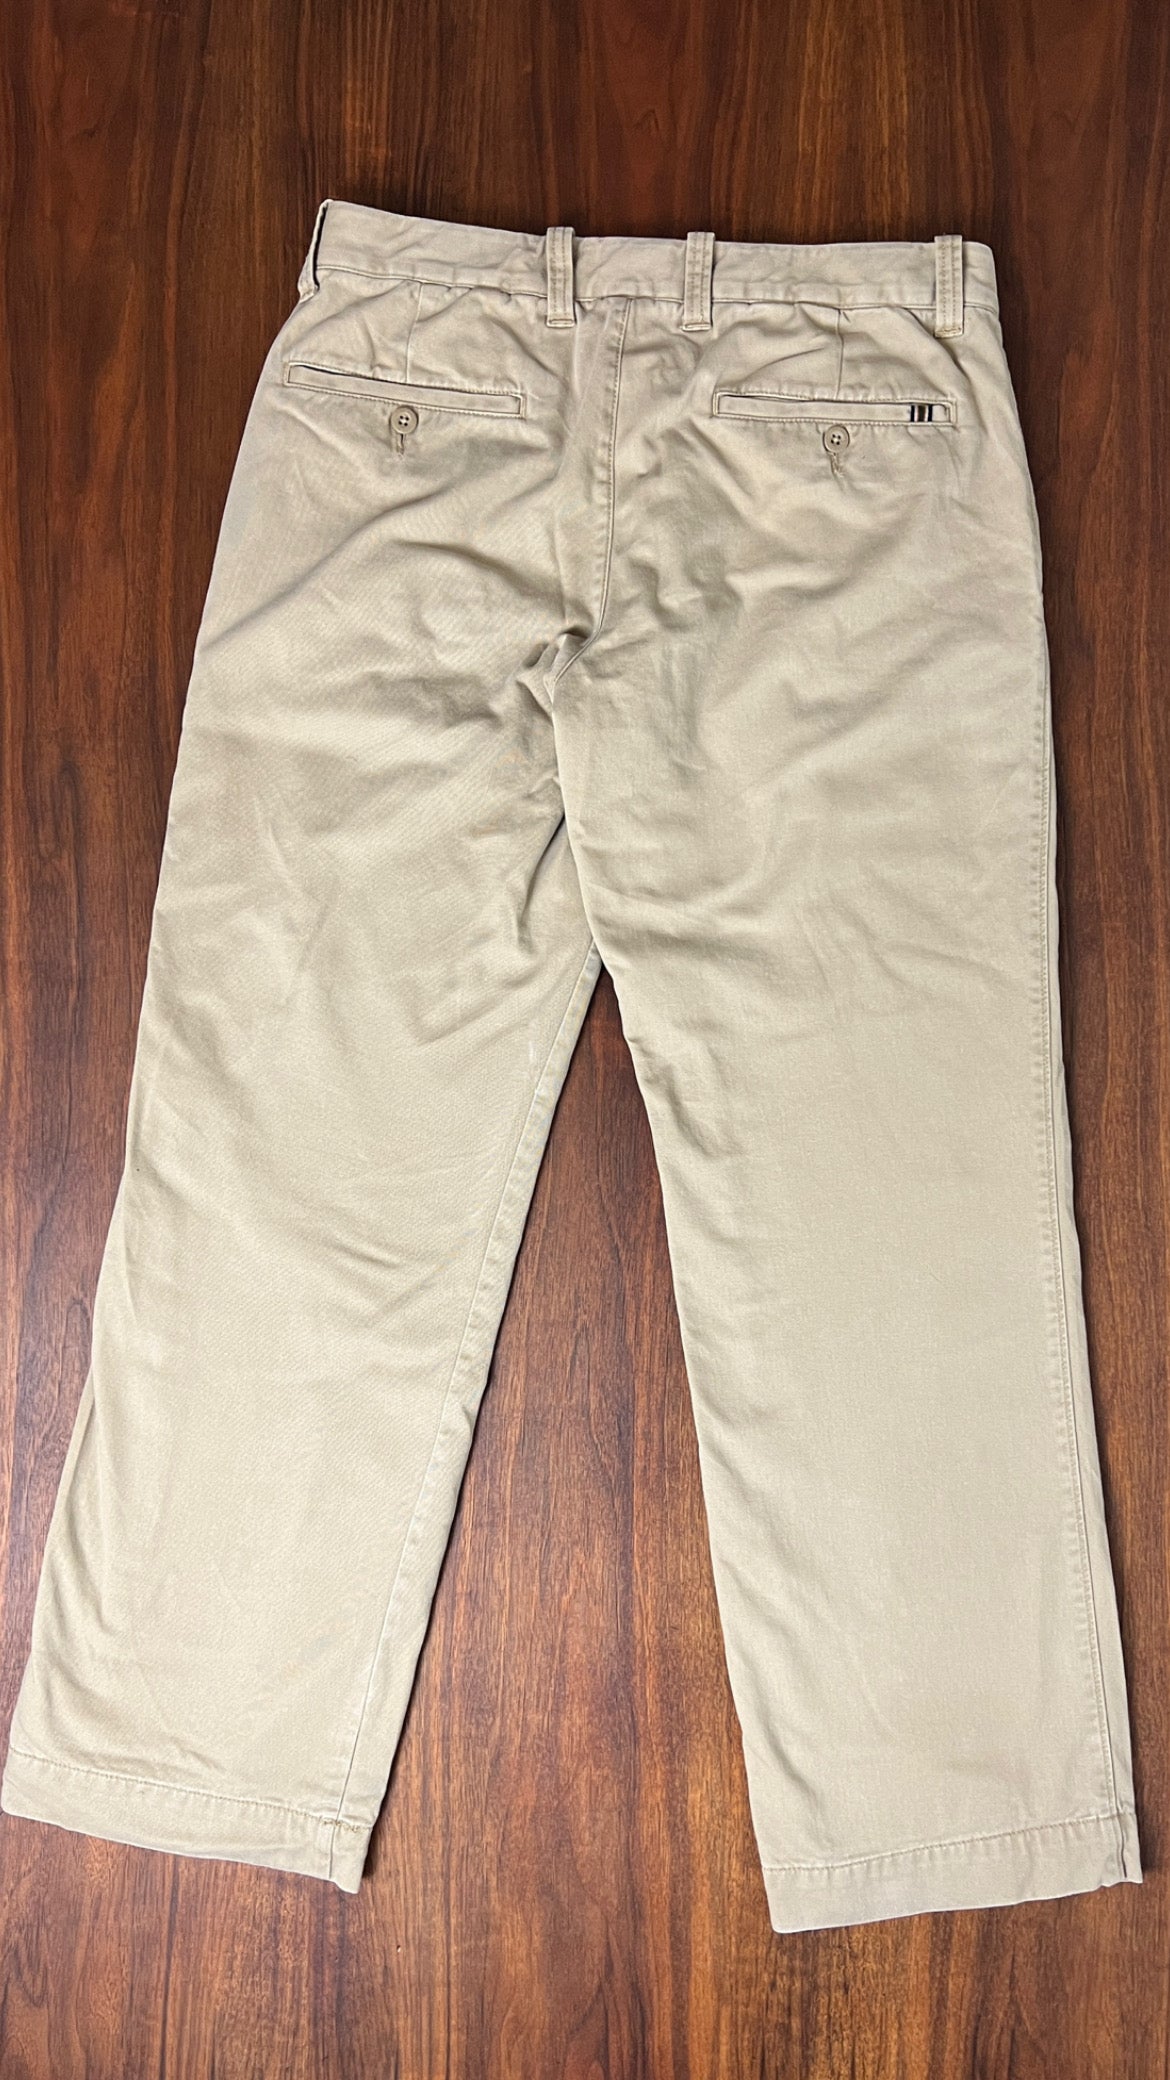 Eddie Bauer fleece lined pants, 36x30, nwot